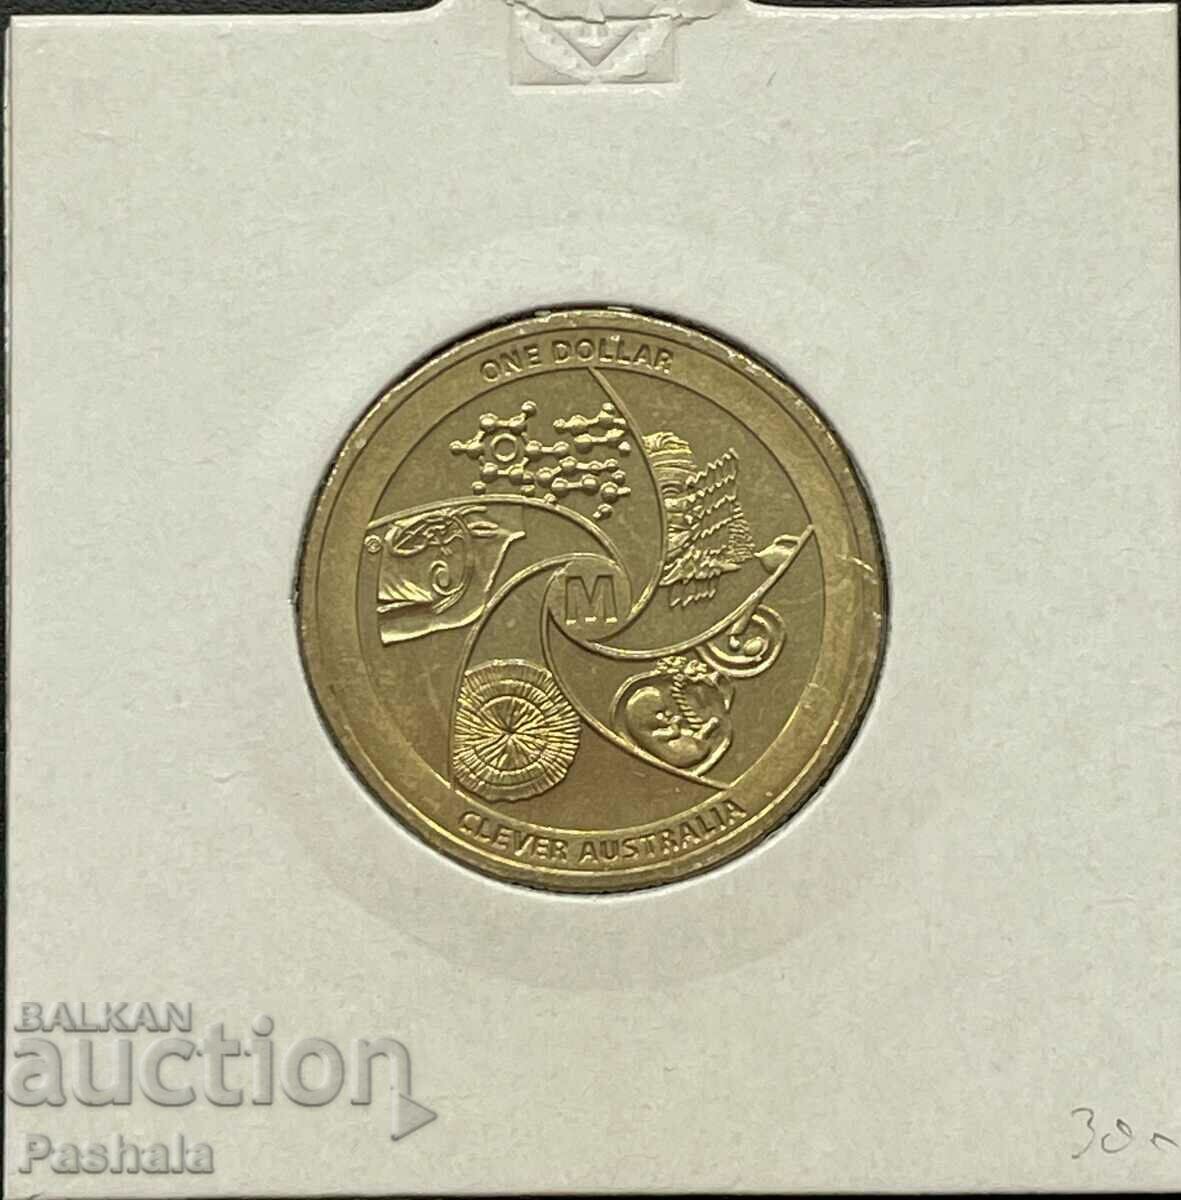 Australia $1 2014